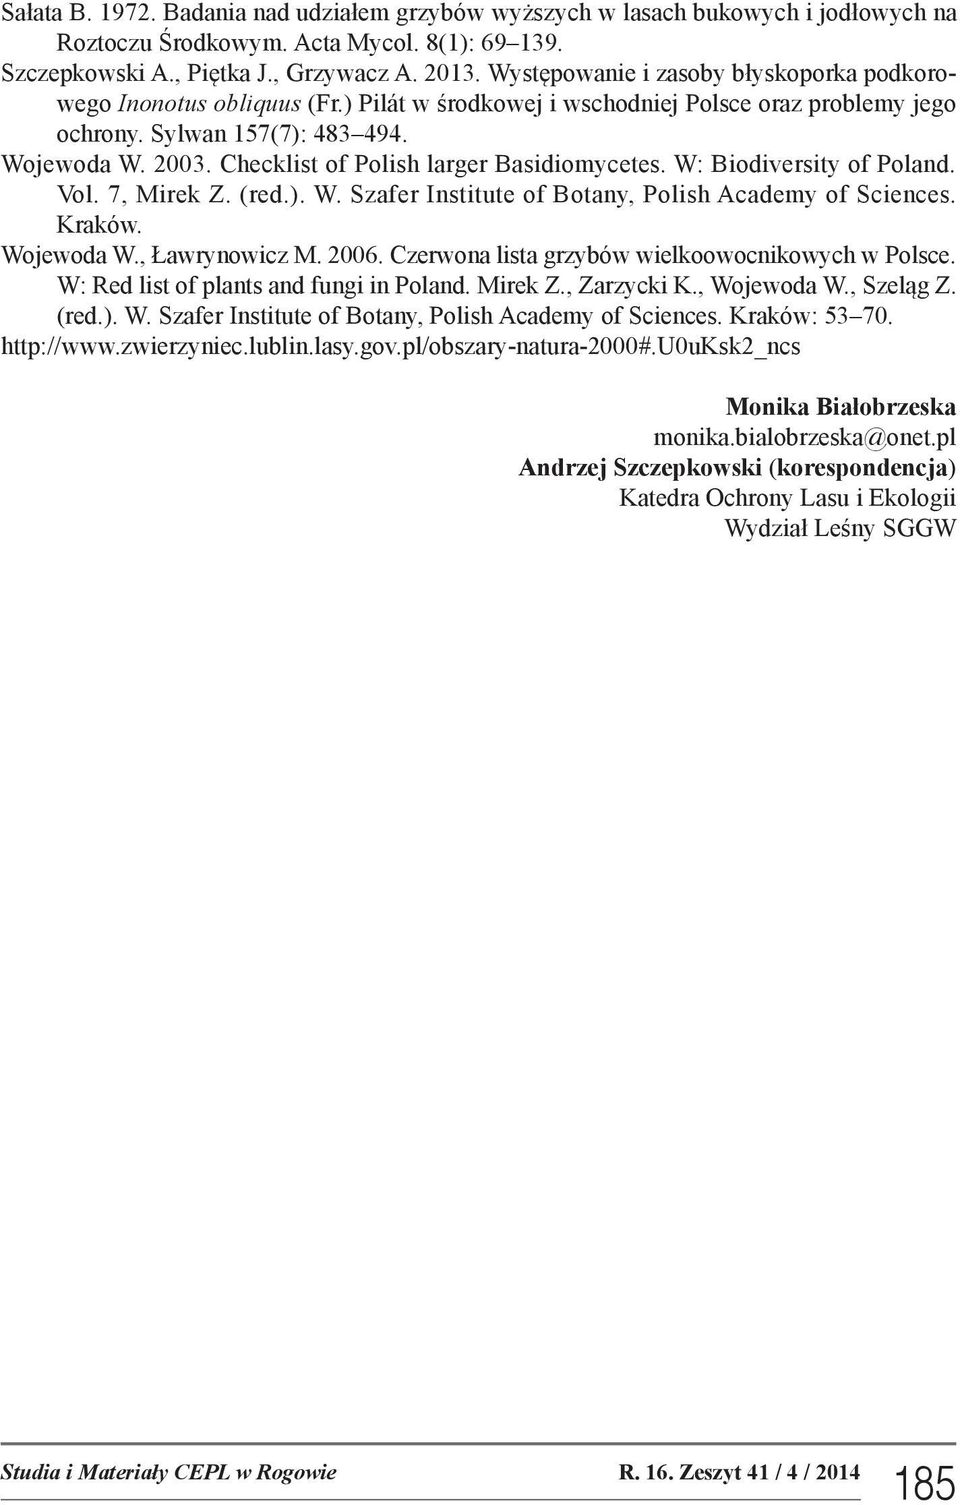 Checklist of Polish larger Basidiomycetes. W: Biodiversity of Poland. Vol. 7, Mirek Z. (red.). W. Szafer Institute of Botany, Polish Academy of Sciences. Kraków. Wojewoda W., Ławrynowicz M. 2006.